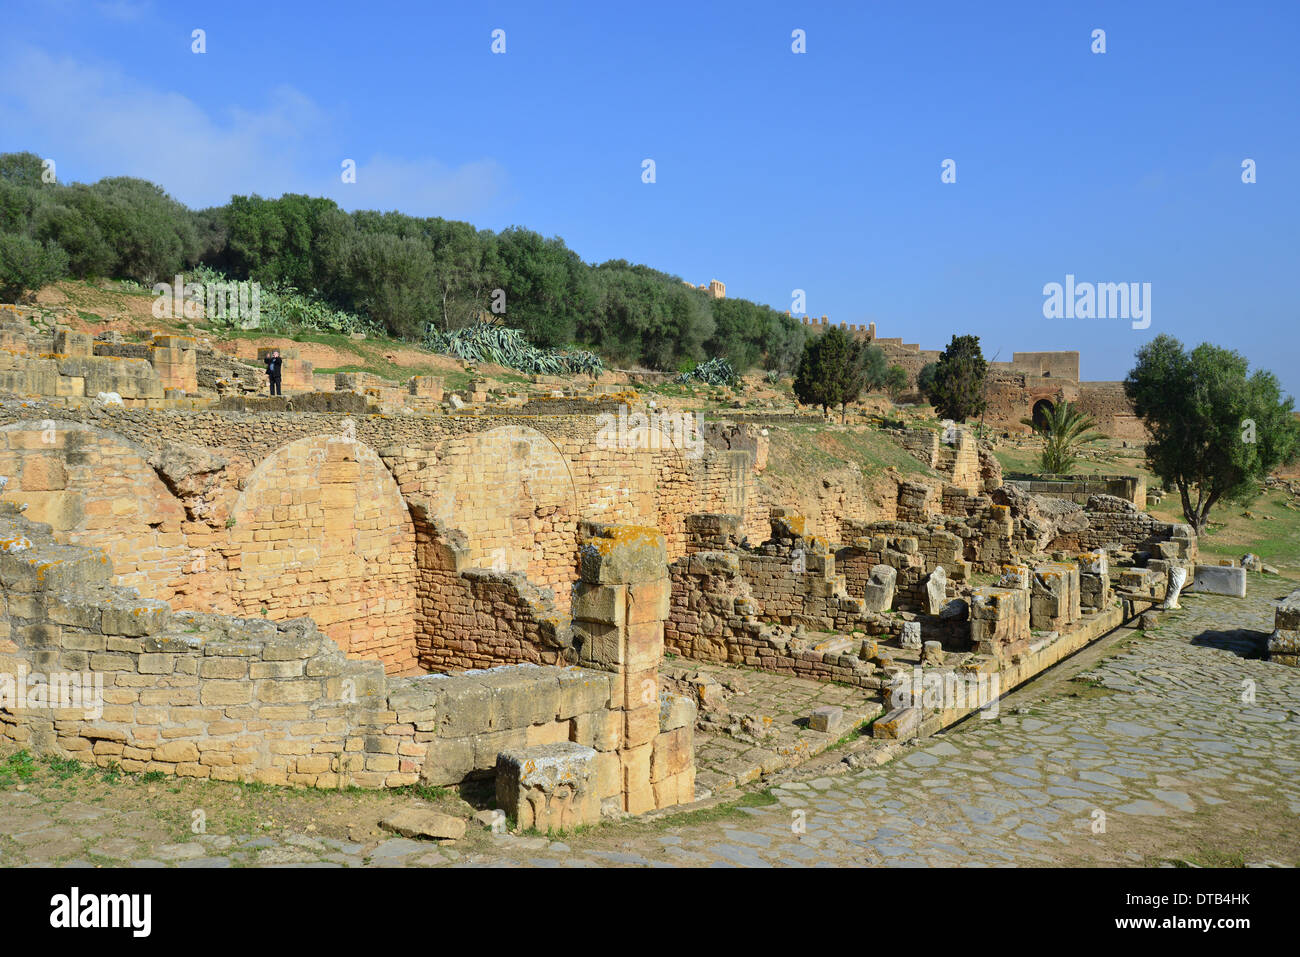 Römische Ausgrabungsstätte Chellah (Sala Colonia), Rabat, Rabat-Salé-Zemmour-Zaer Region, Königreich Marokko Stockfoto